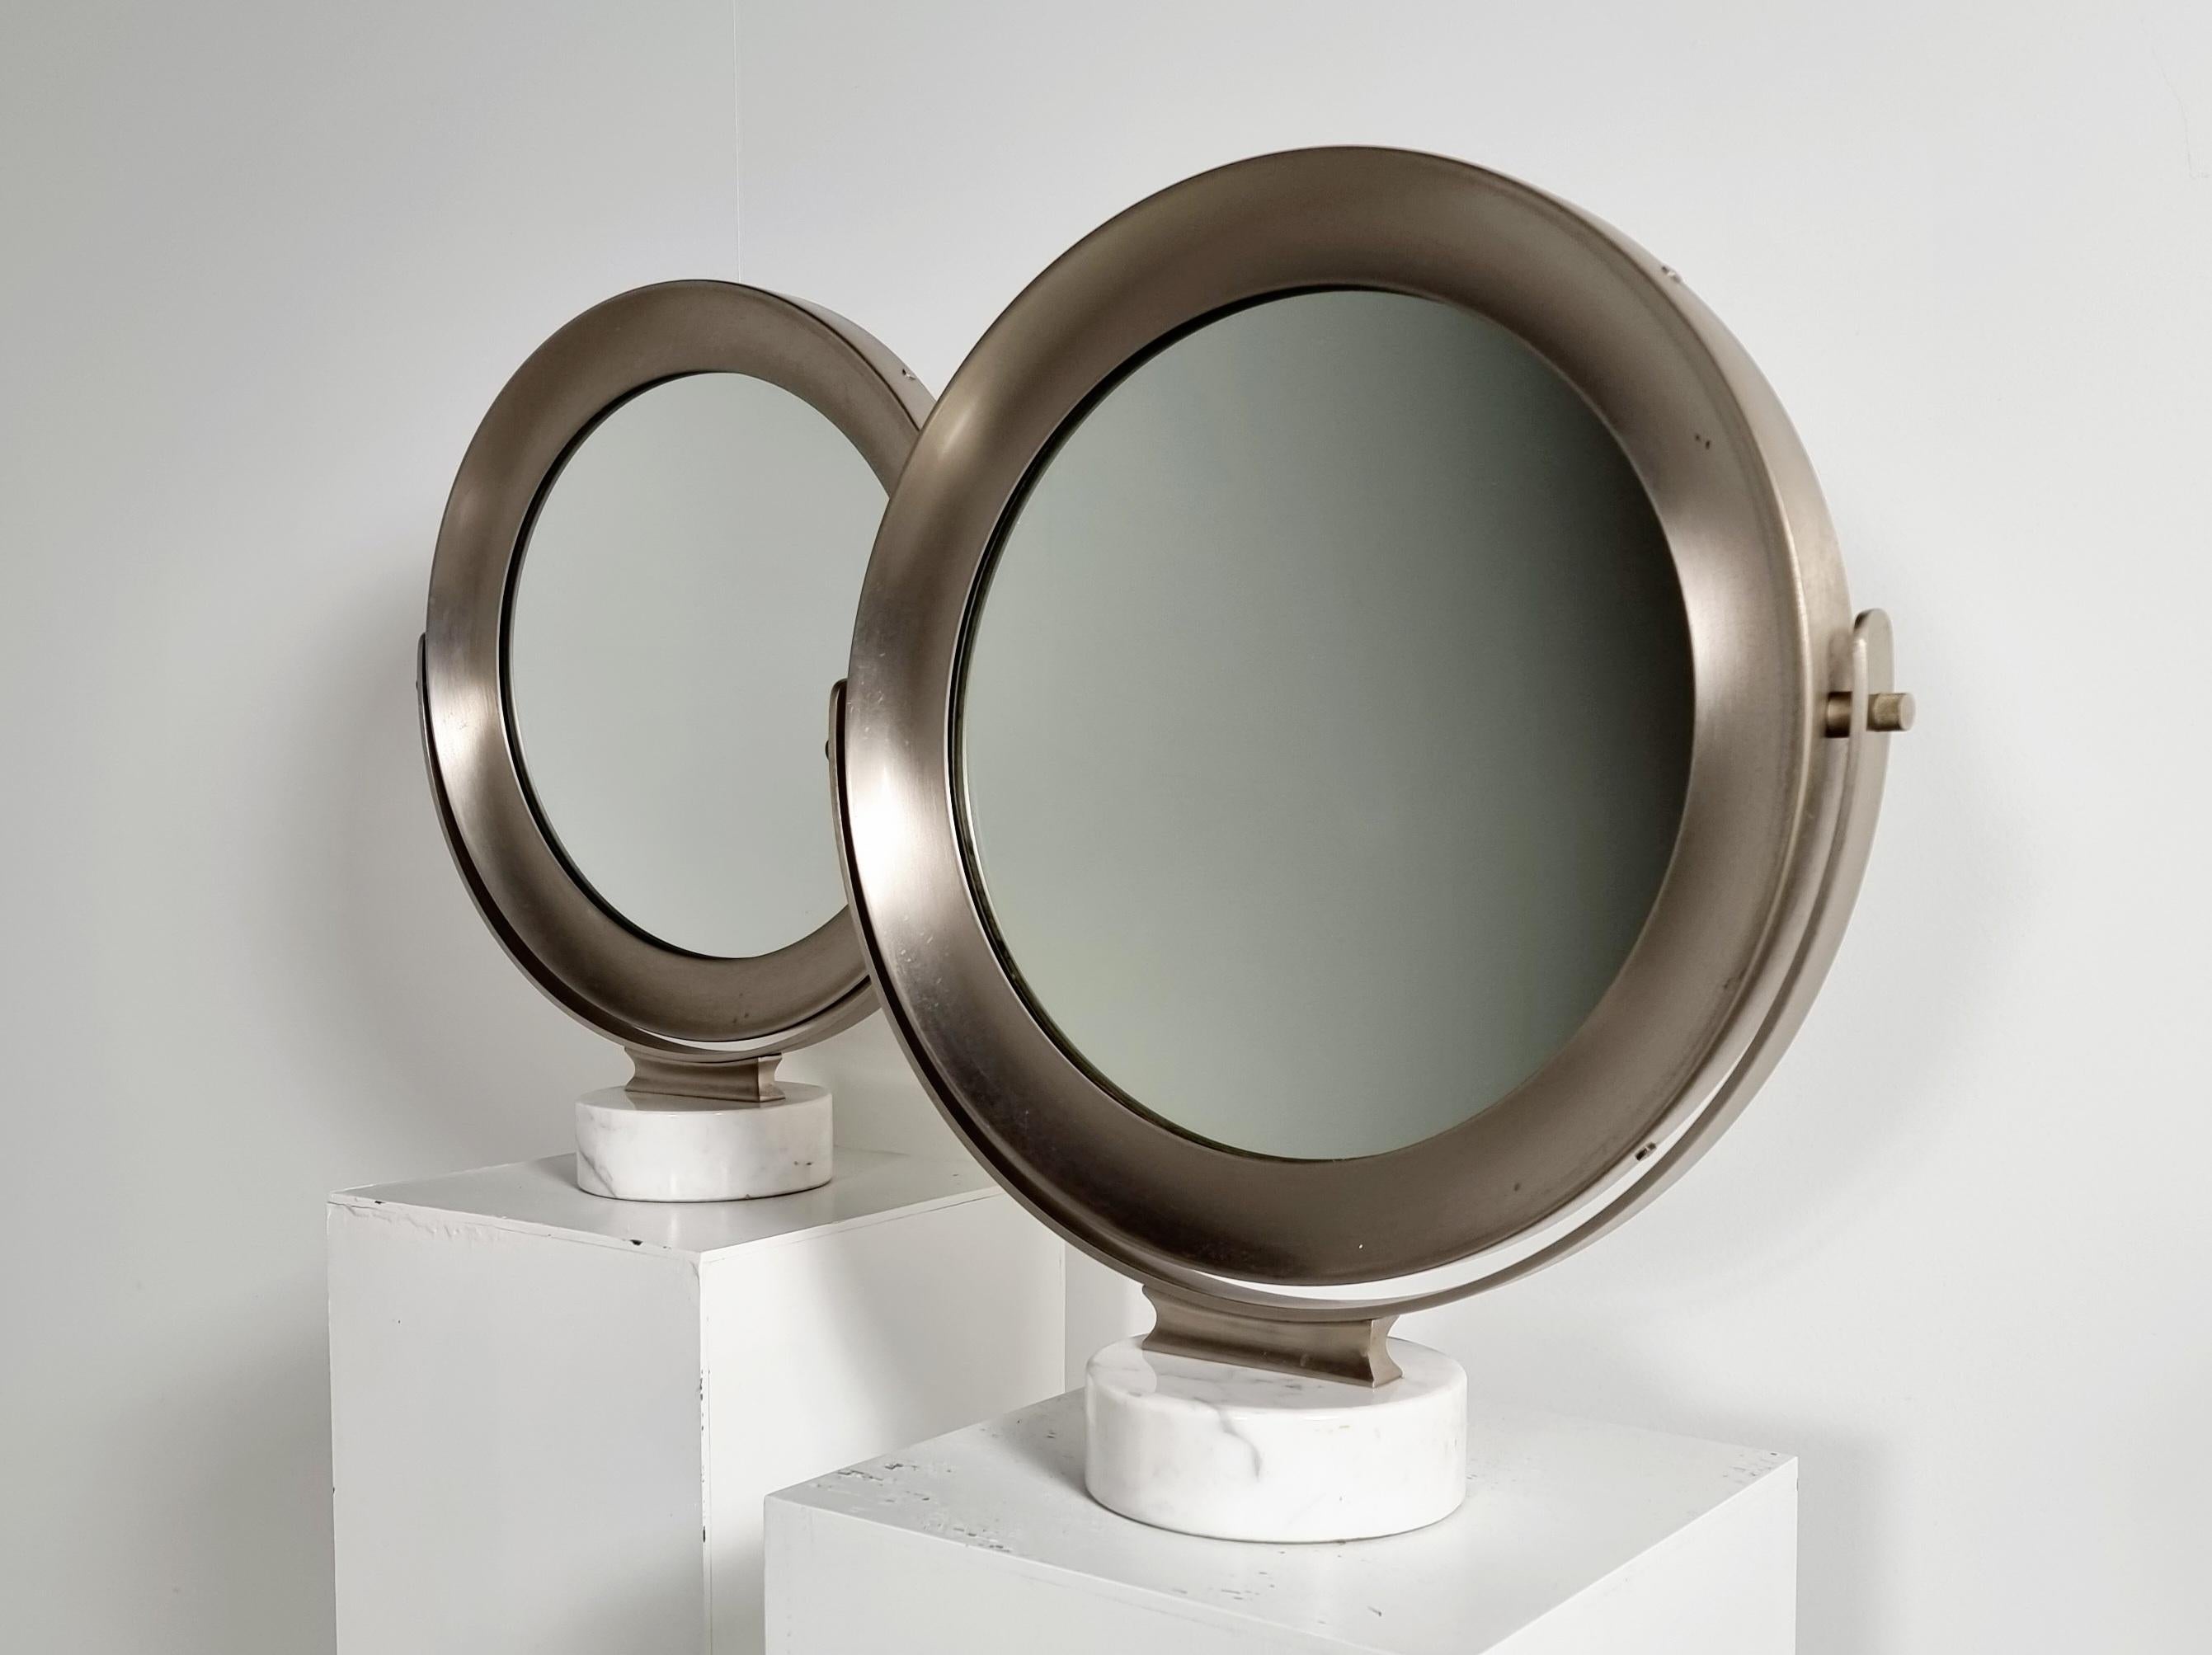 Miroir de table Narciso en marbre de Carrare et acier par Sergio Mazza pour Artemide, les années 1970. Avec une base cylindrique en marbre blanc de Carrare et une structure de support pour le miroir basculant en acier satiné, ainsi que le cadre